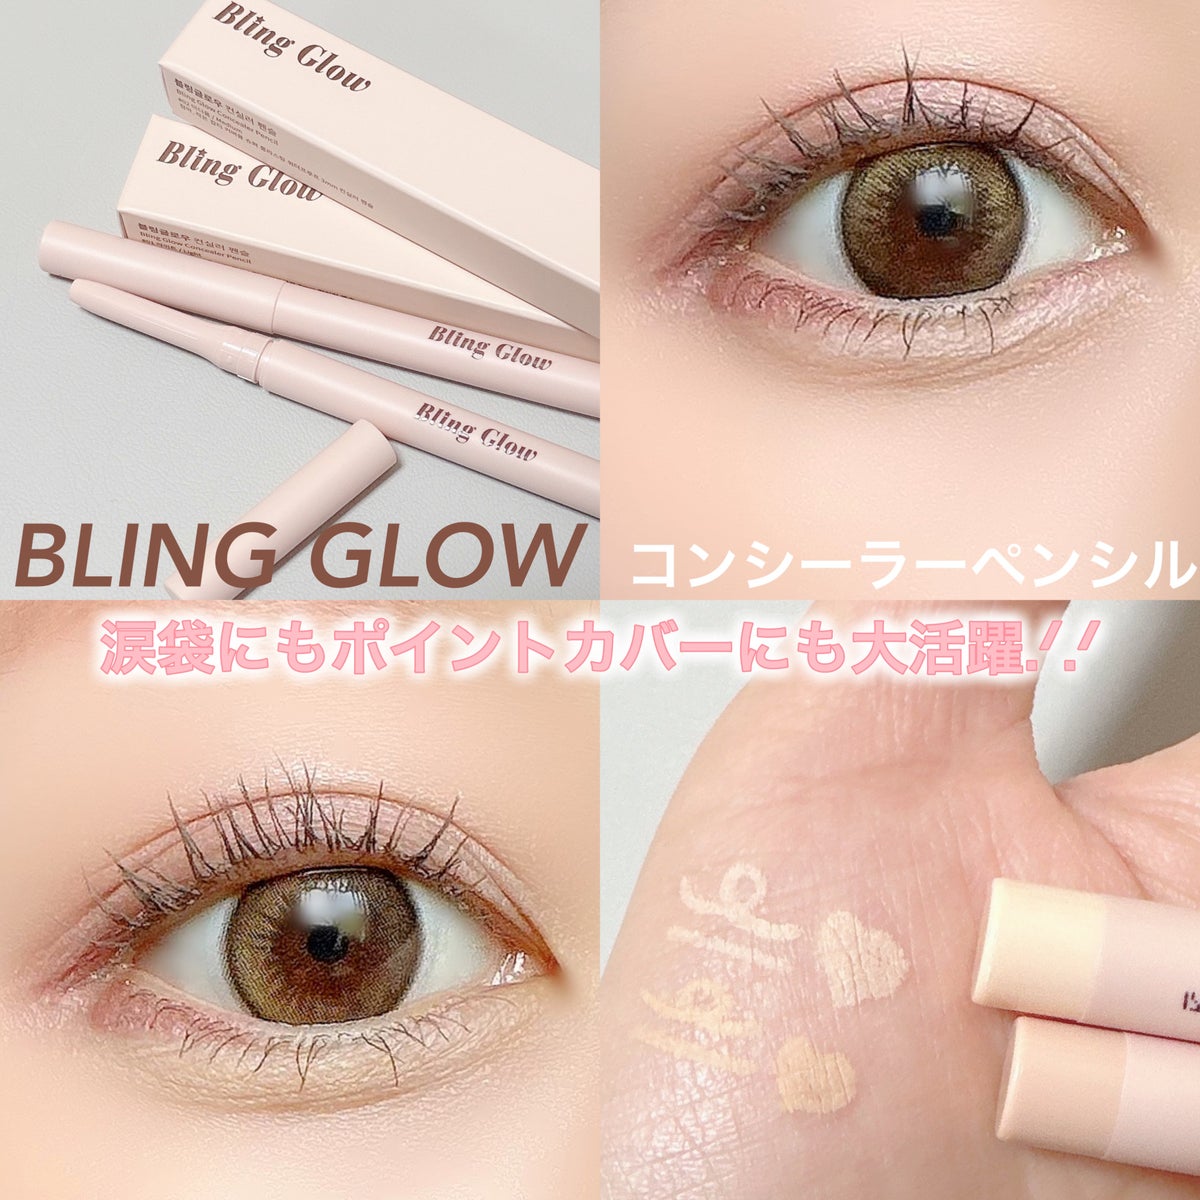 Bling Glow ブリングロウ コンシーラー ペンシル 01 - ベース